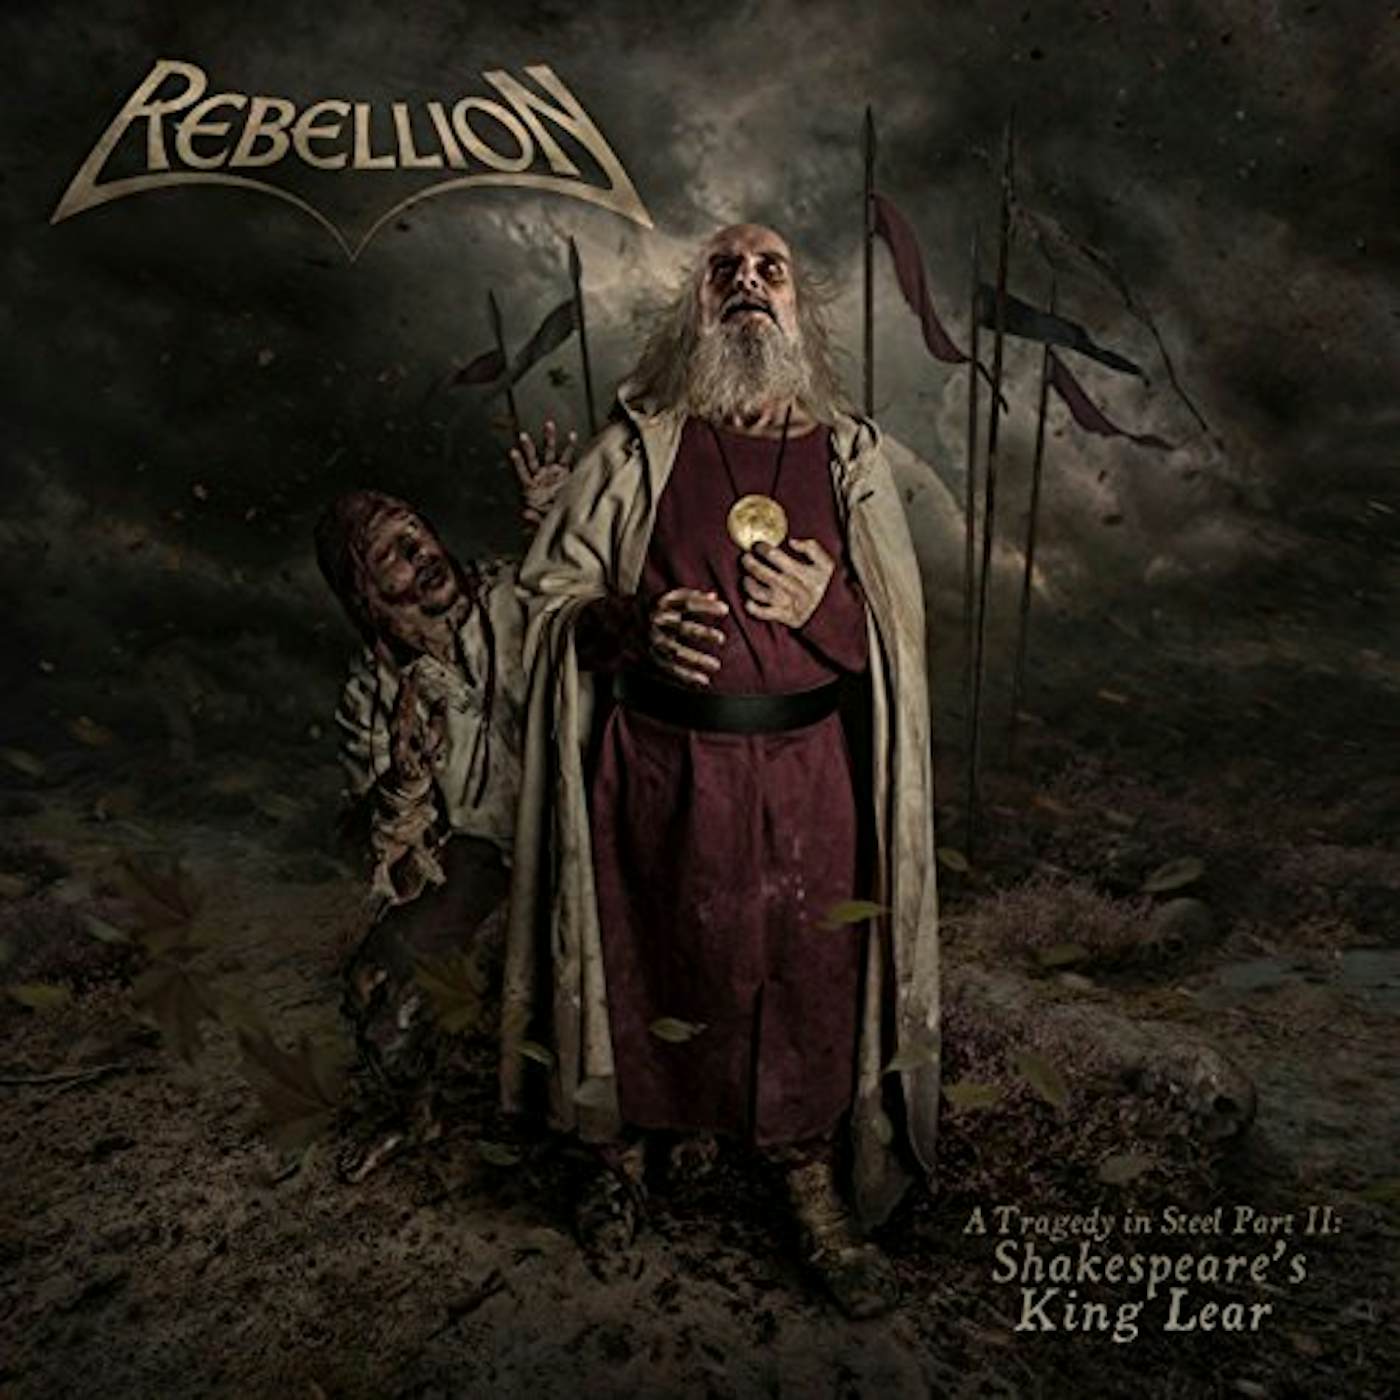 Rebellion TRAGEDY IN STEEL PART II: SHAKESPEARE'S KING LEAR CD